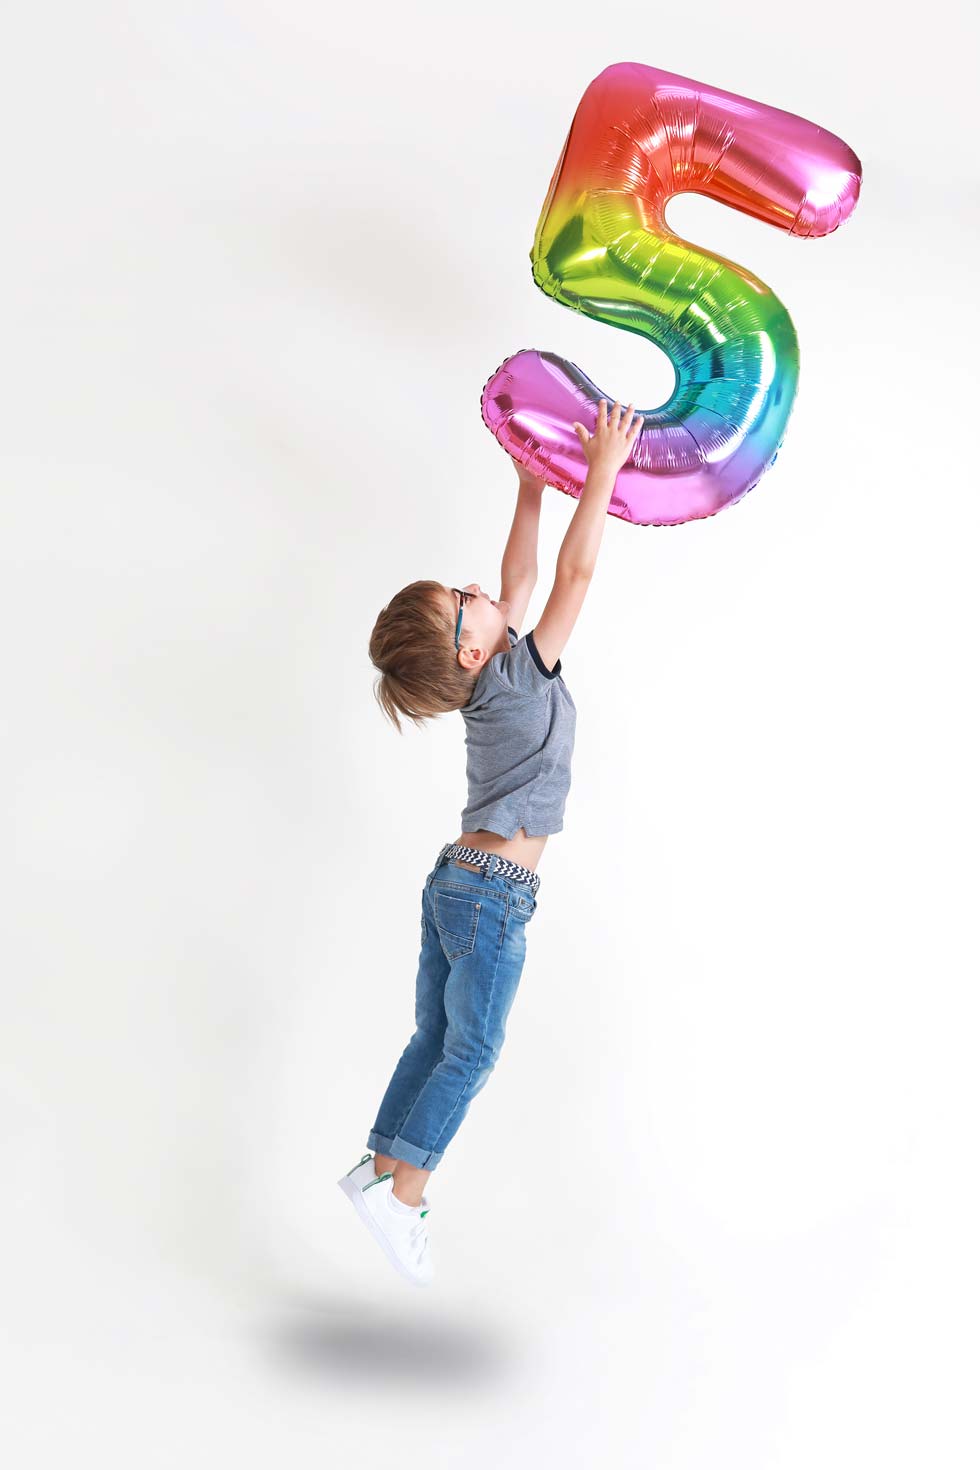 Création d'un poster d'une photographie d'un enfant attrapant un ballon